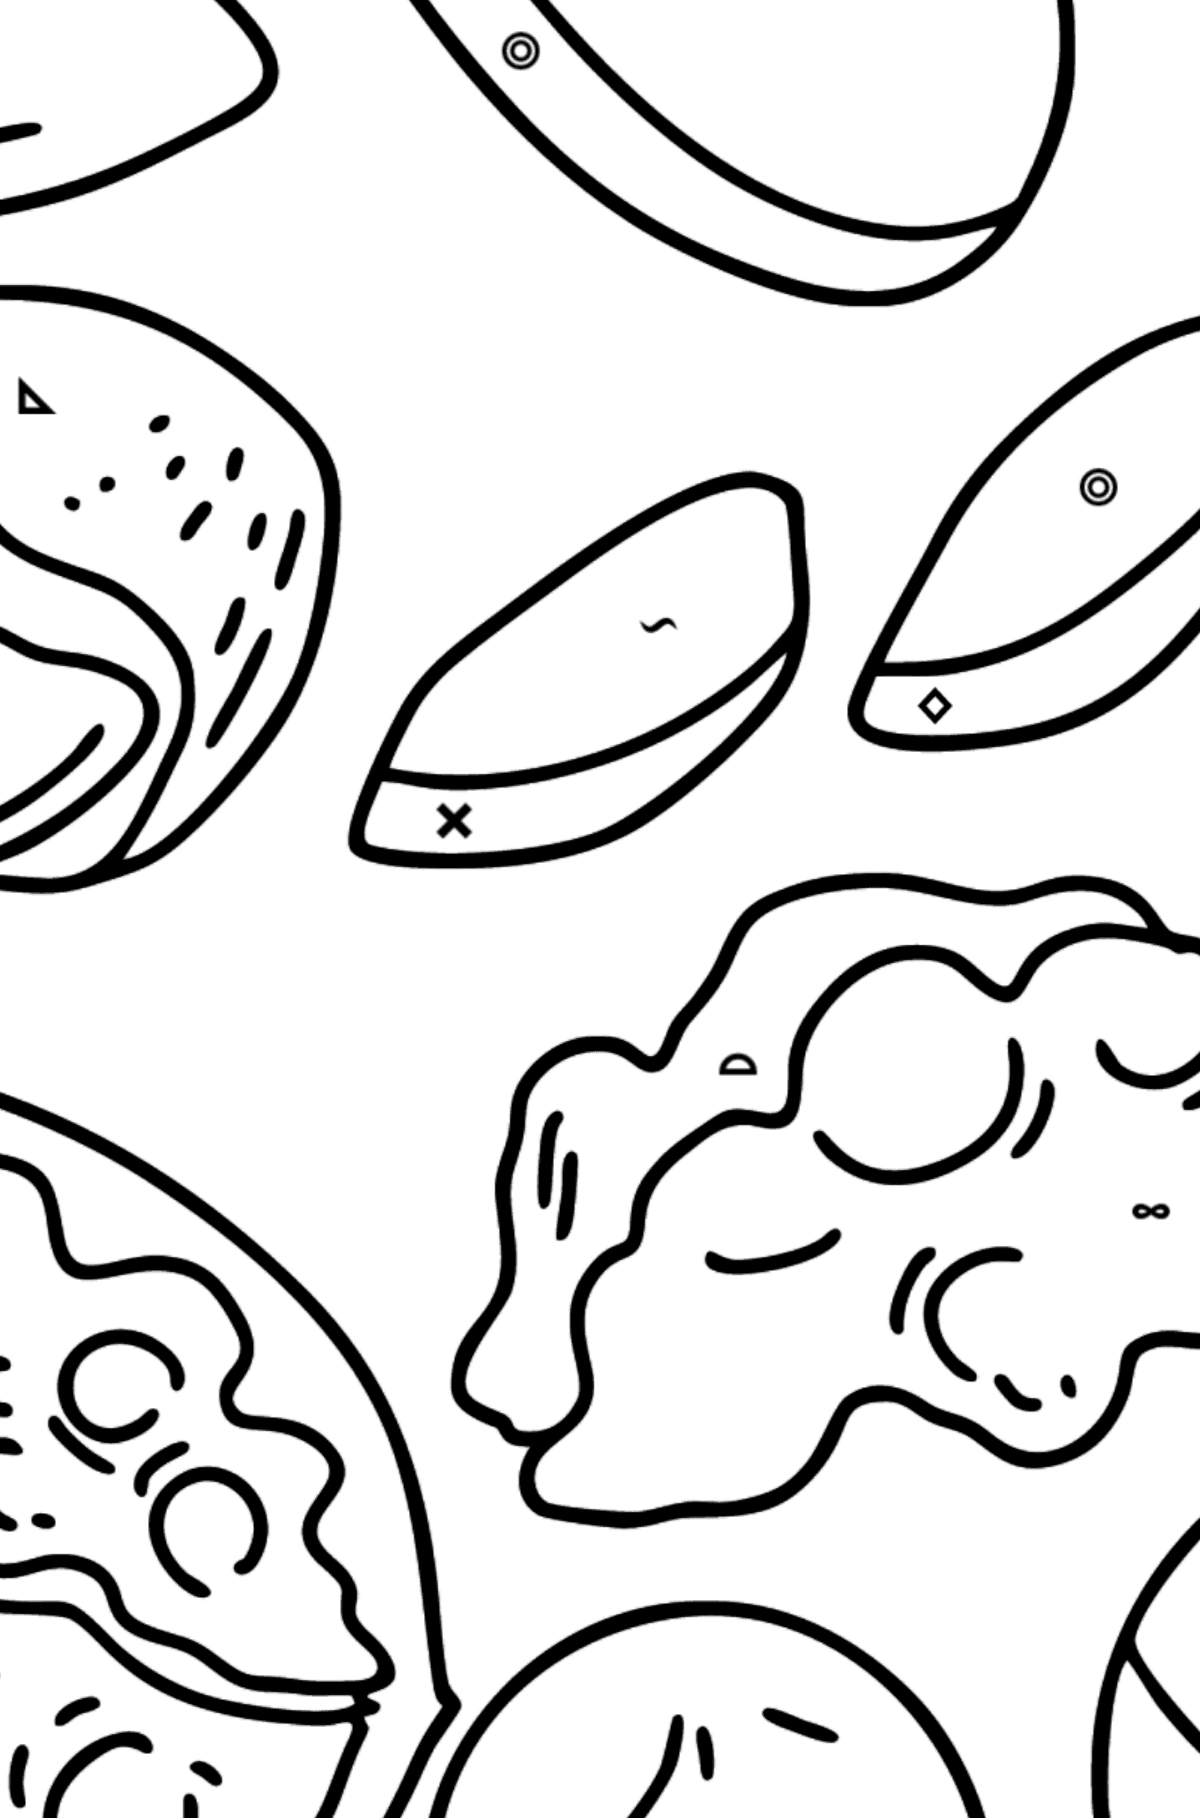 Tegning til fargelegging nøtter: valnøtter, macadamia, mandler og peanøtter - Fargelegge etter symboler og geometriske former for barn